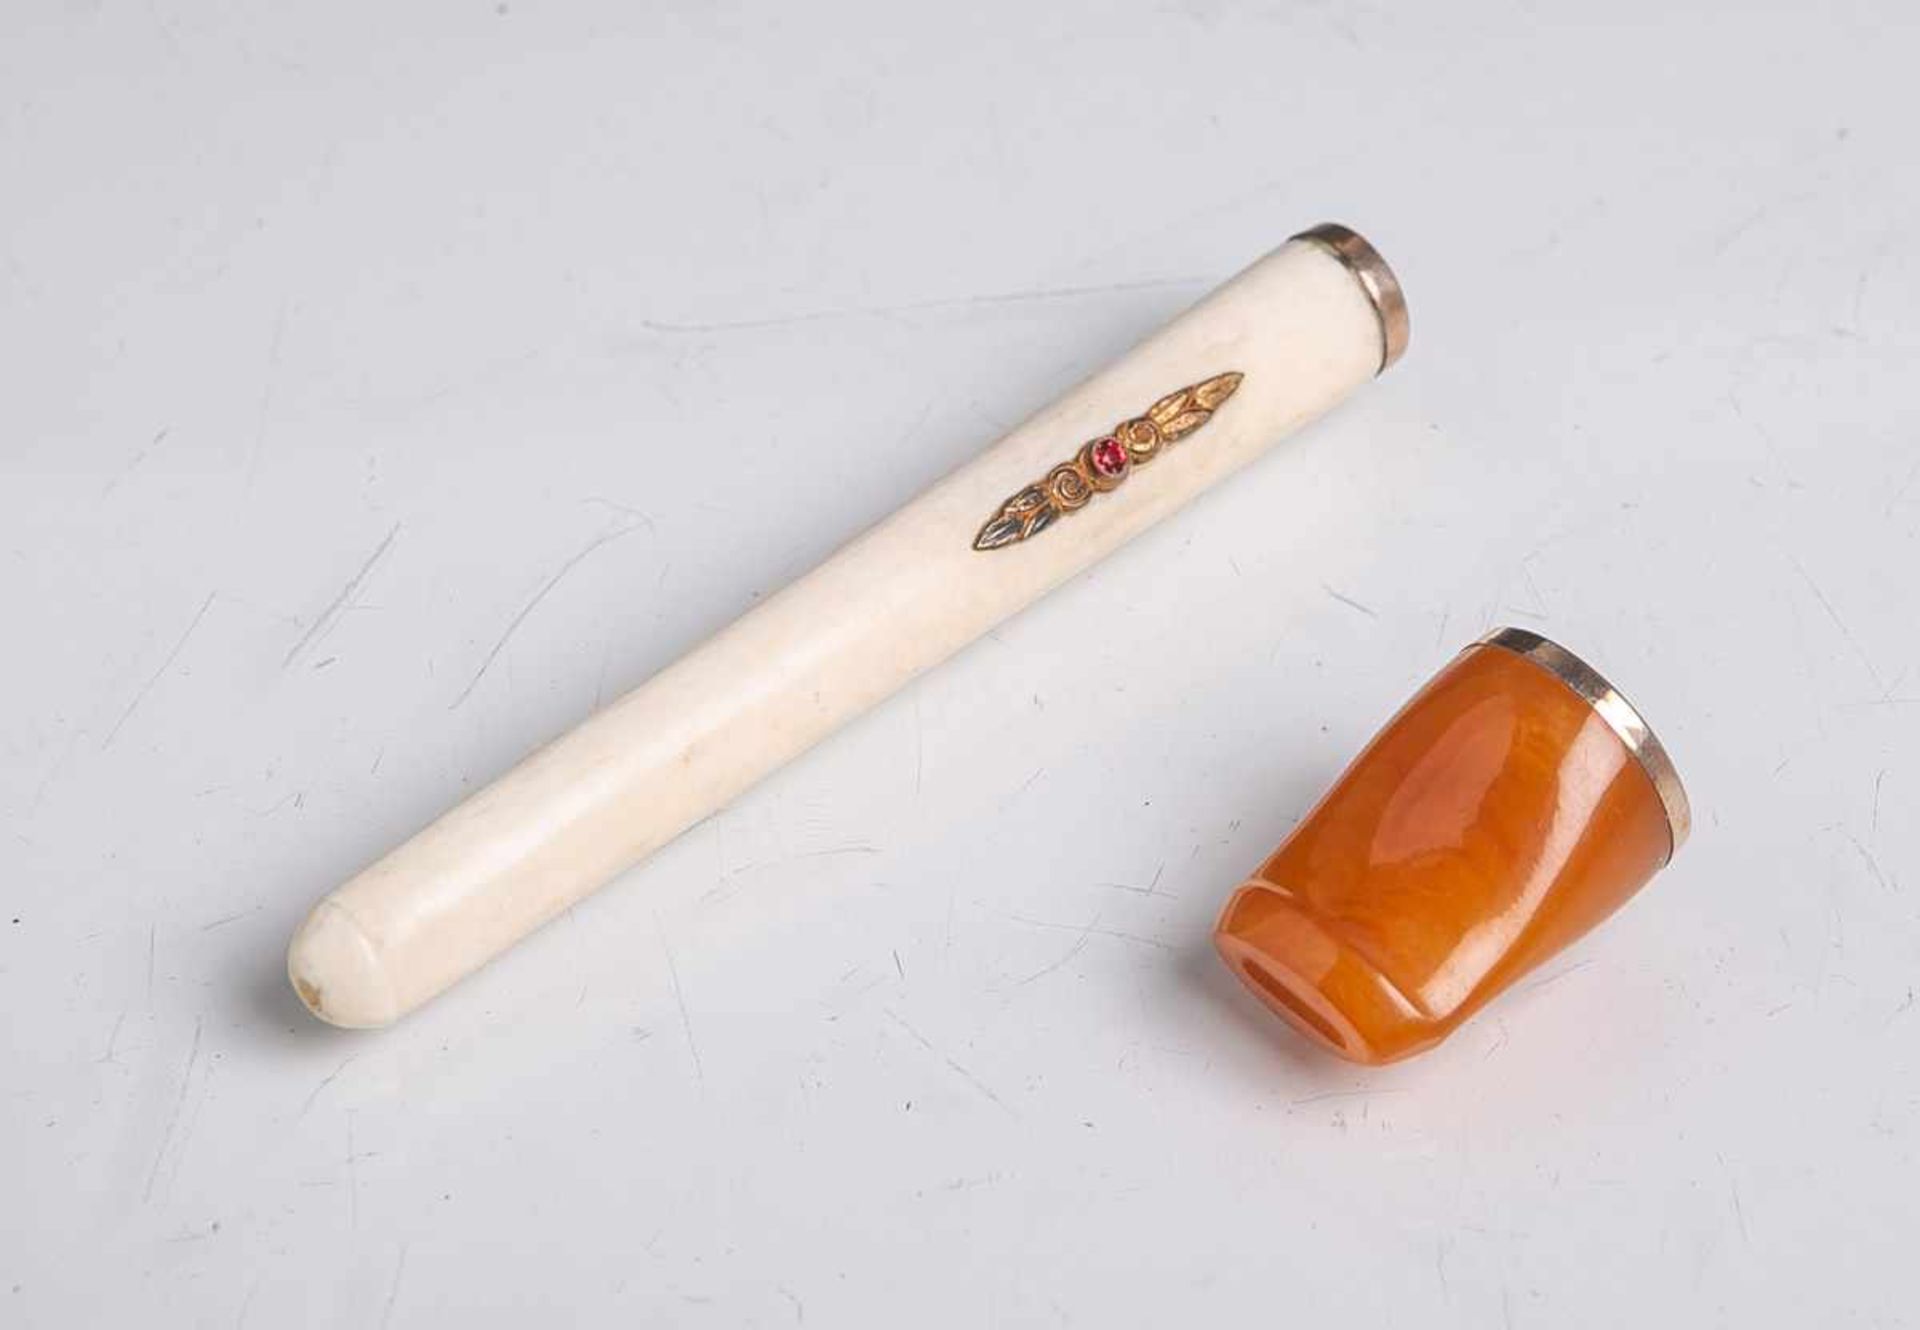 2 Zigarettenspitzen, davon 1x aus Bein, m. 2 roten Farbsteinen verziert, L. ca. 9 cm u. 1xwohl aus